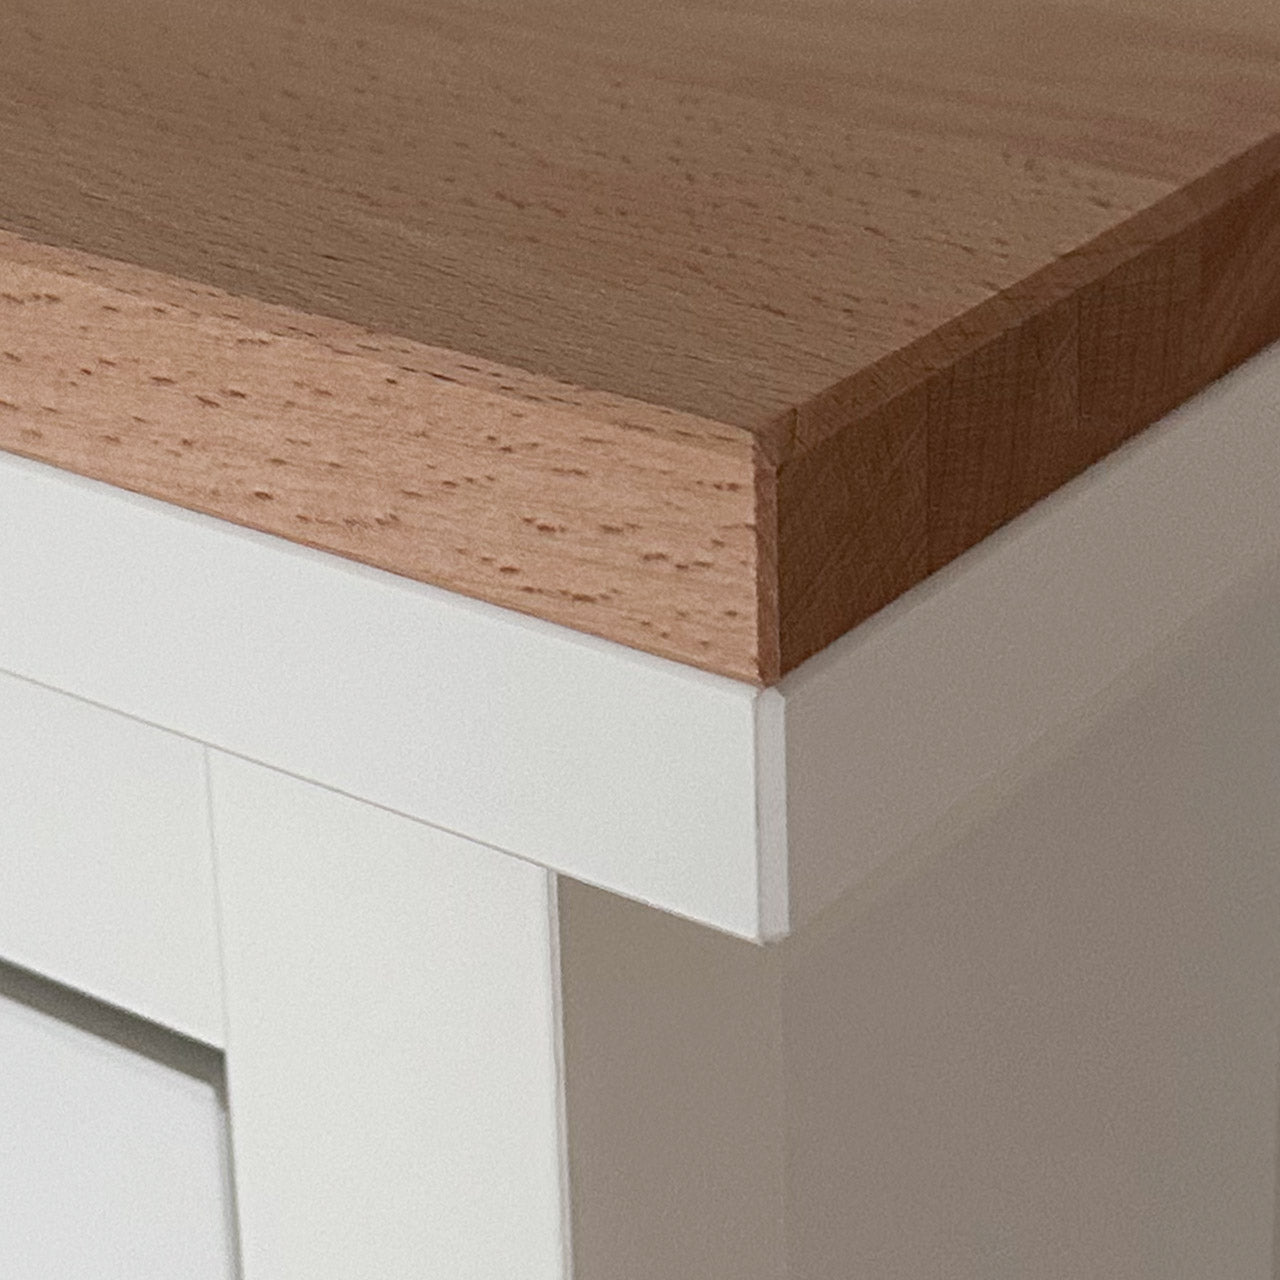 Detailansicht von einer natur belassenen Holzplatte aus Buchenholz, die passgenau auf einem weißen Ikea Hemnes Schuhschrank liegt.